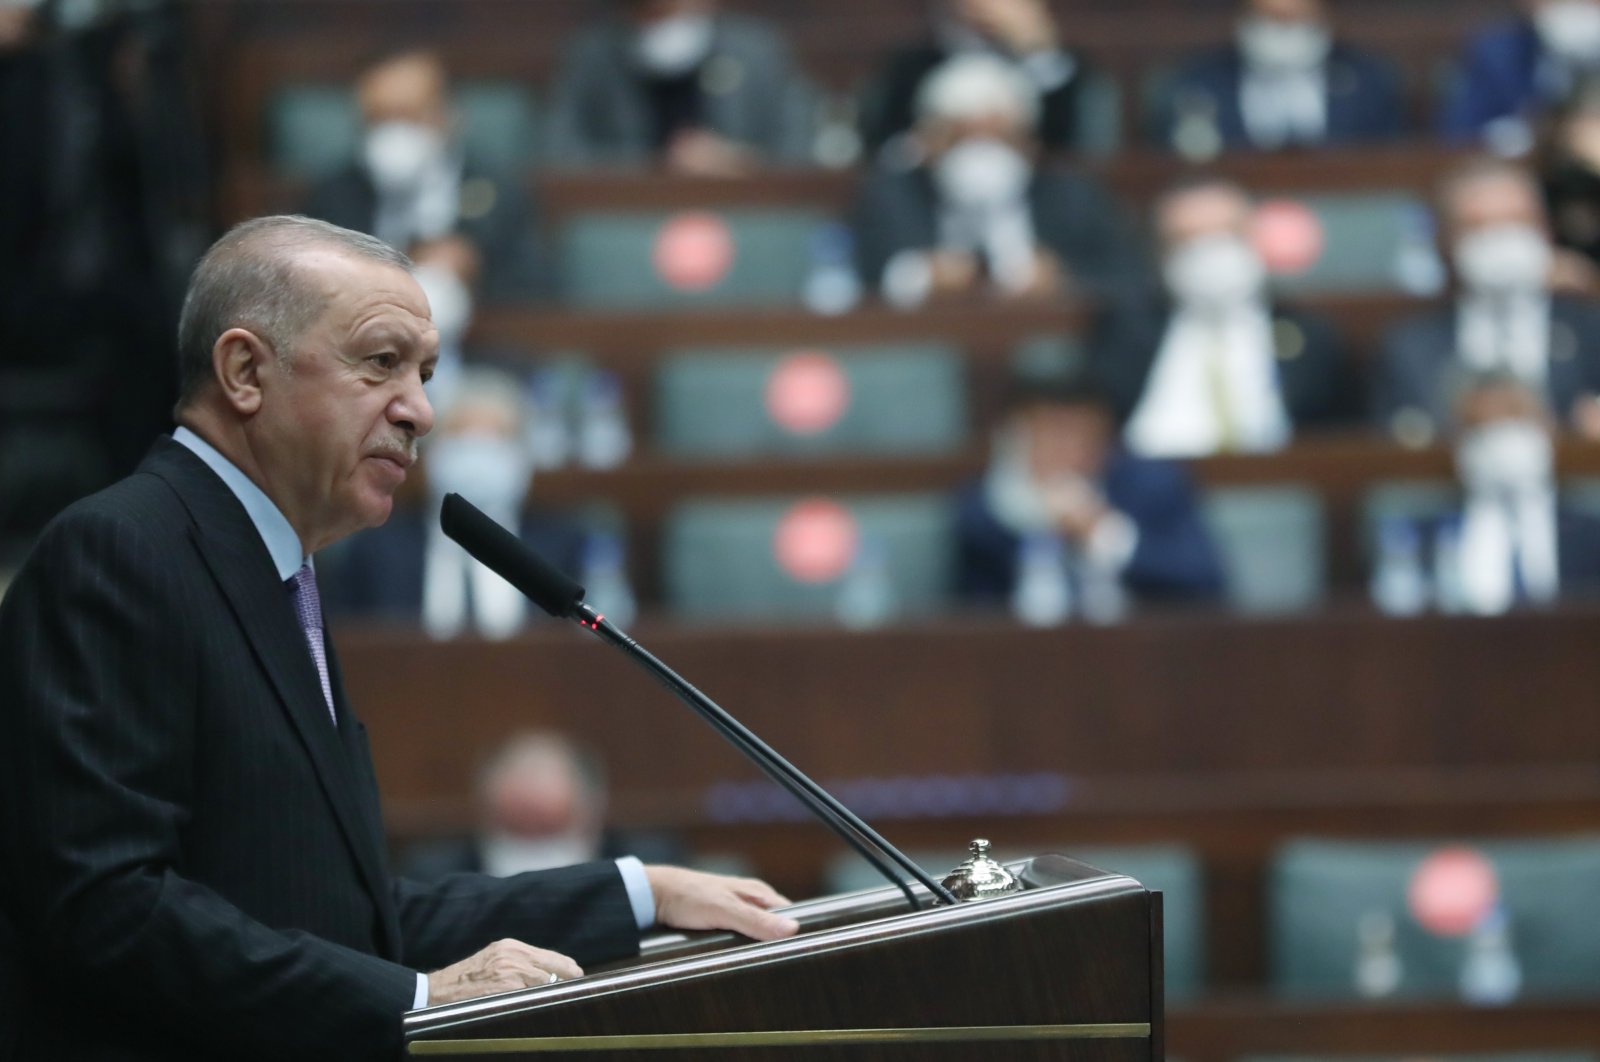 CHP ingin Turki lama, penggulingan demokrasi, ekonomi: Erdogan